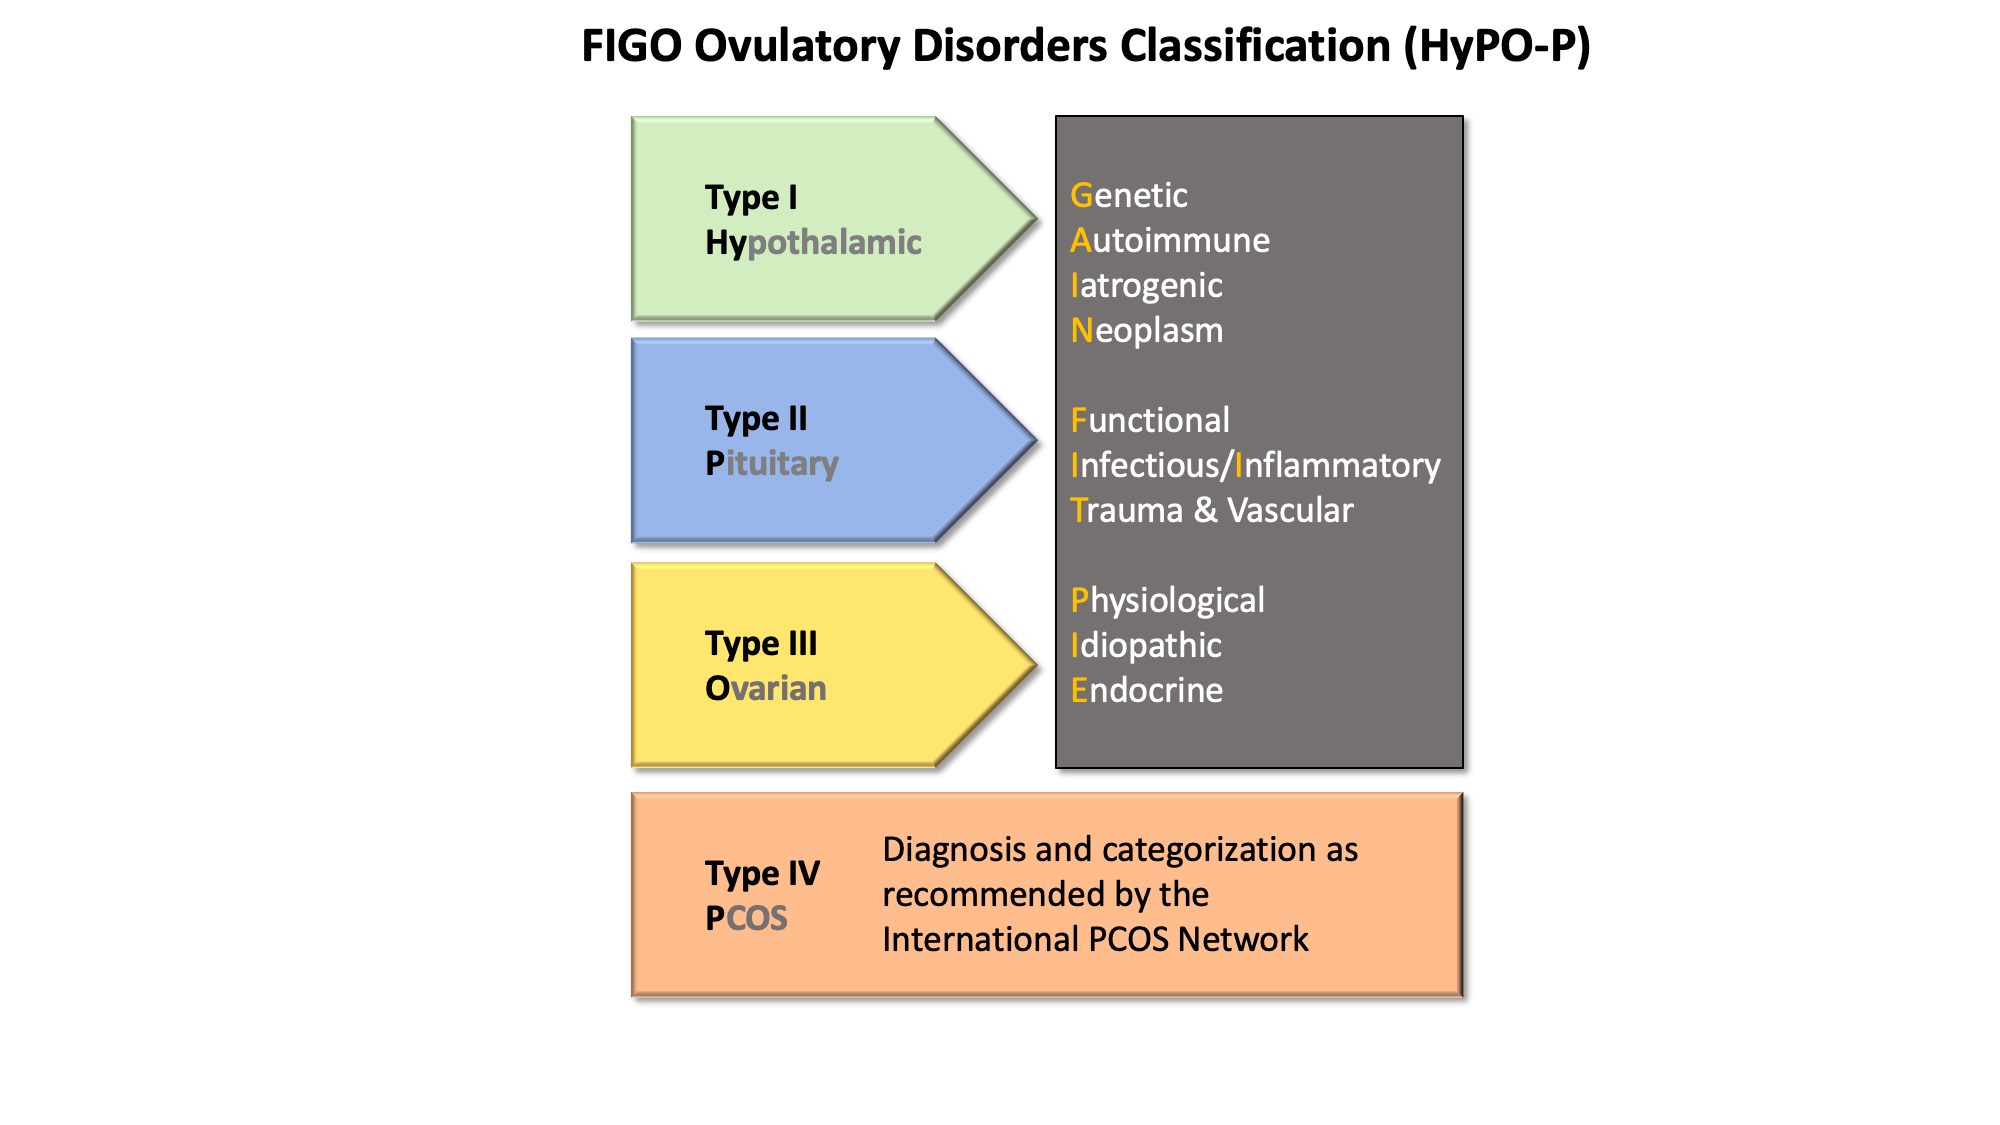 HyPo-P classification